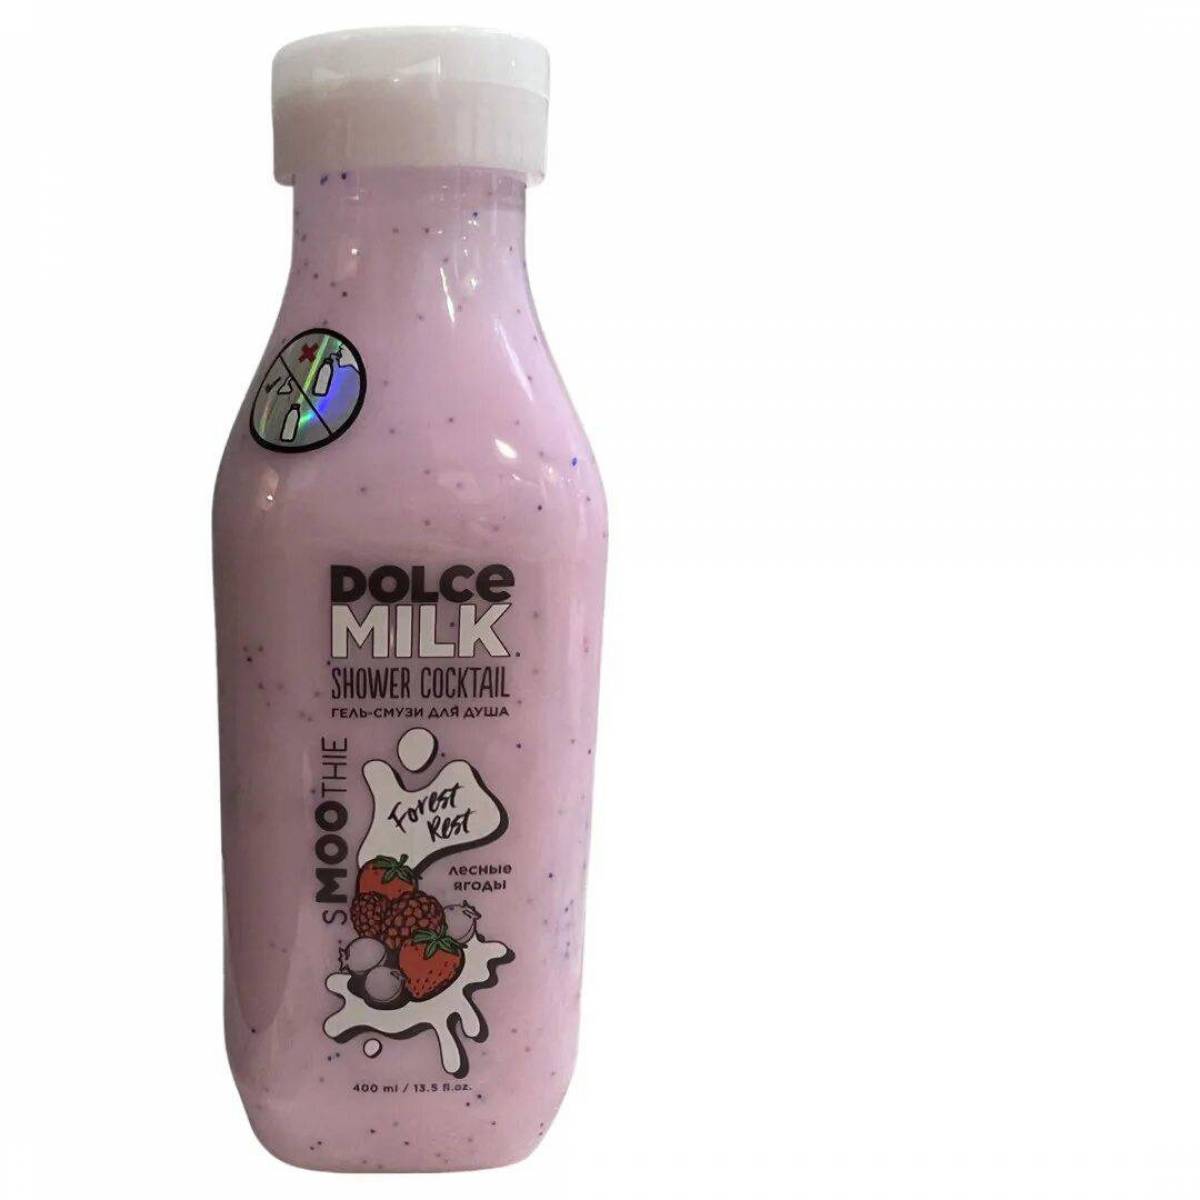 Dolce milk #13